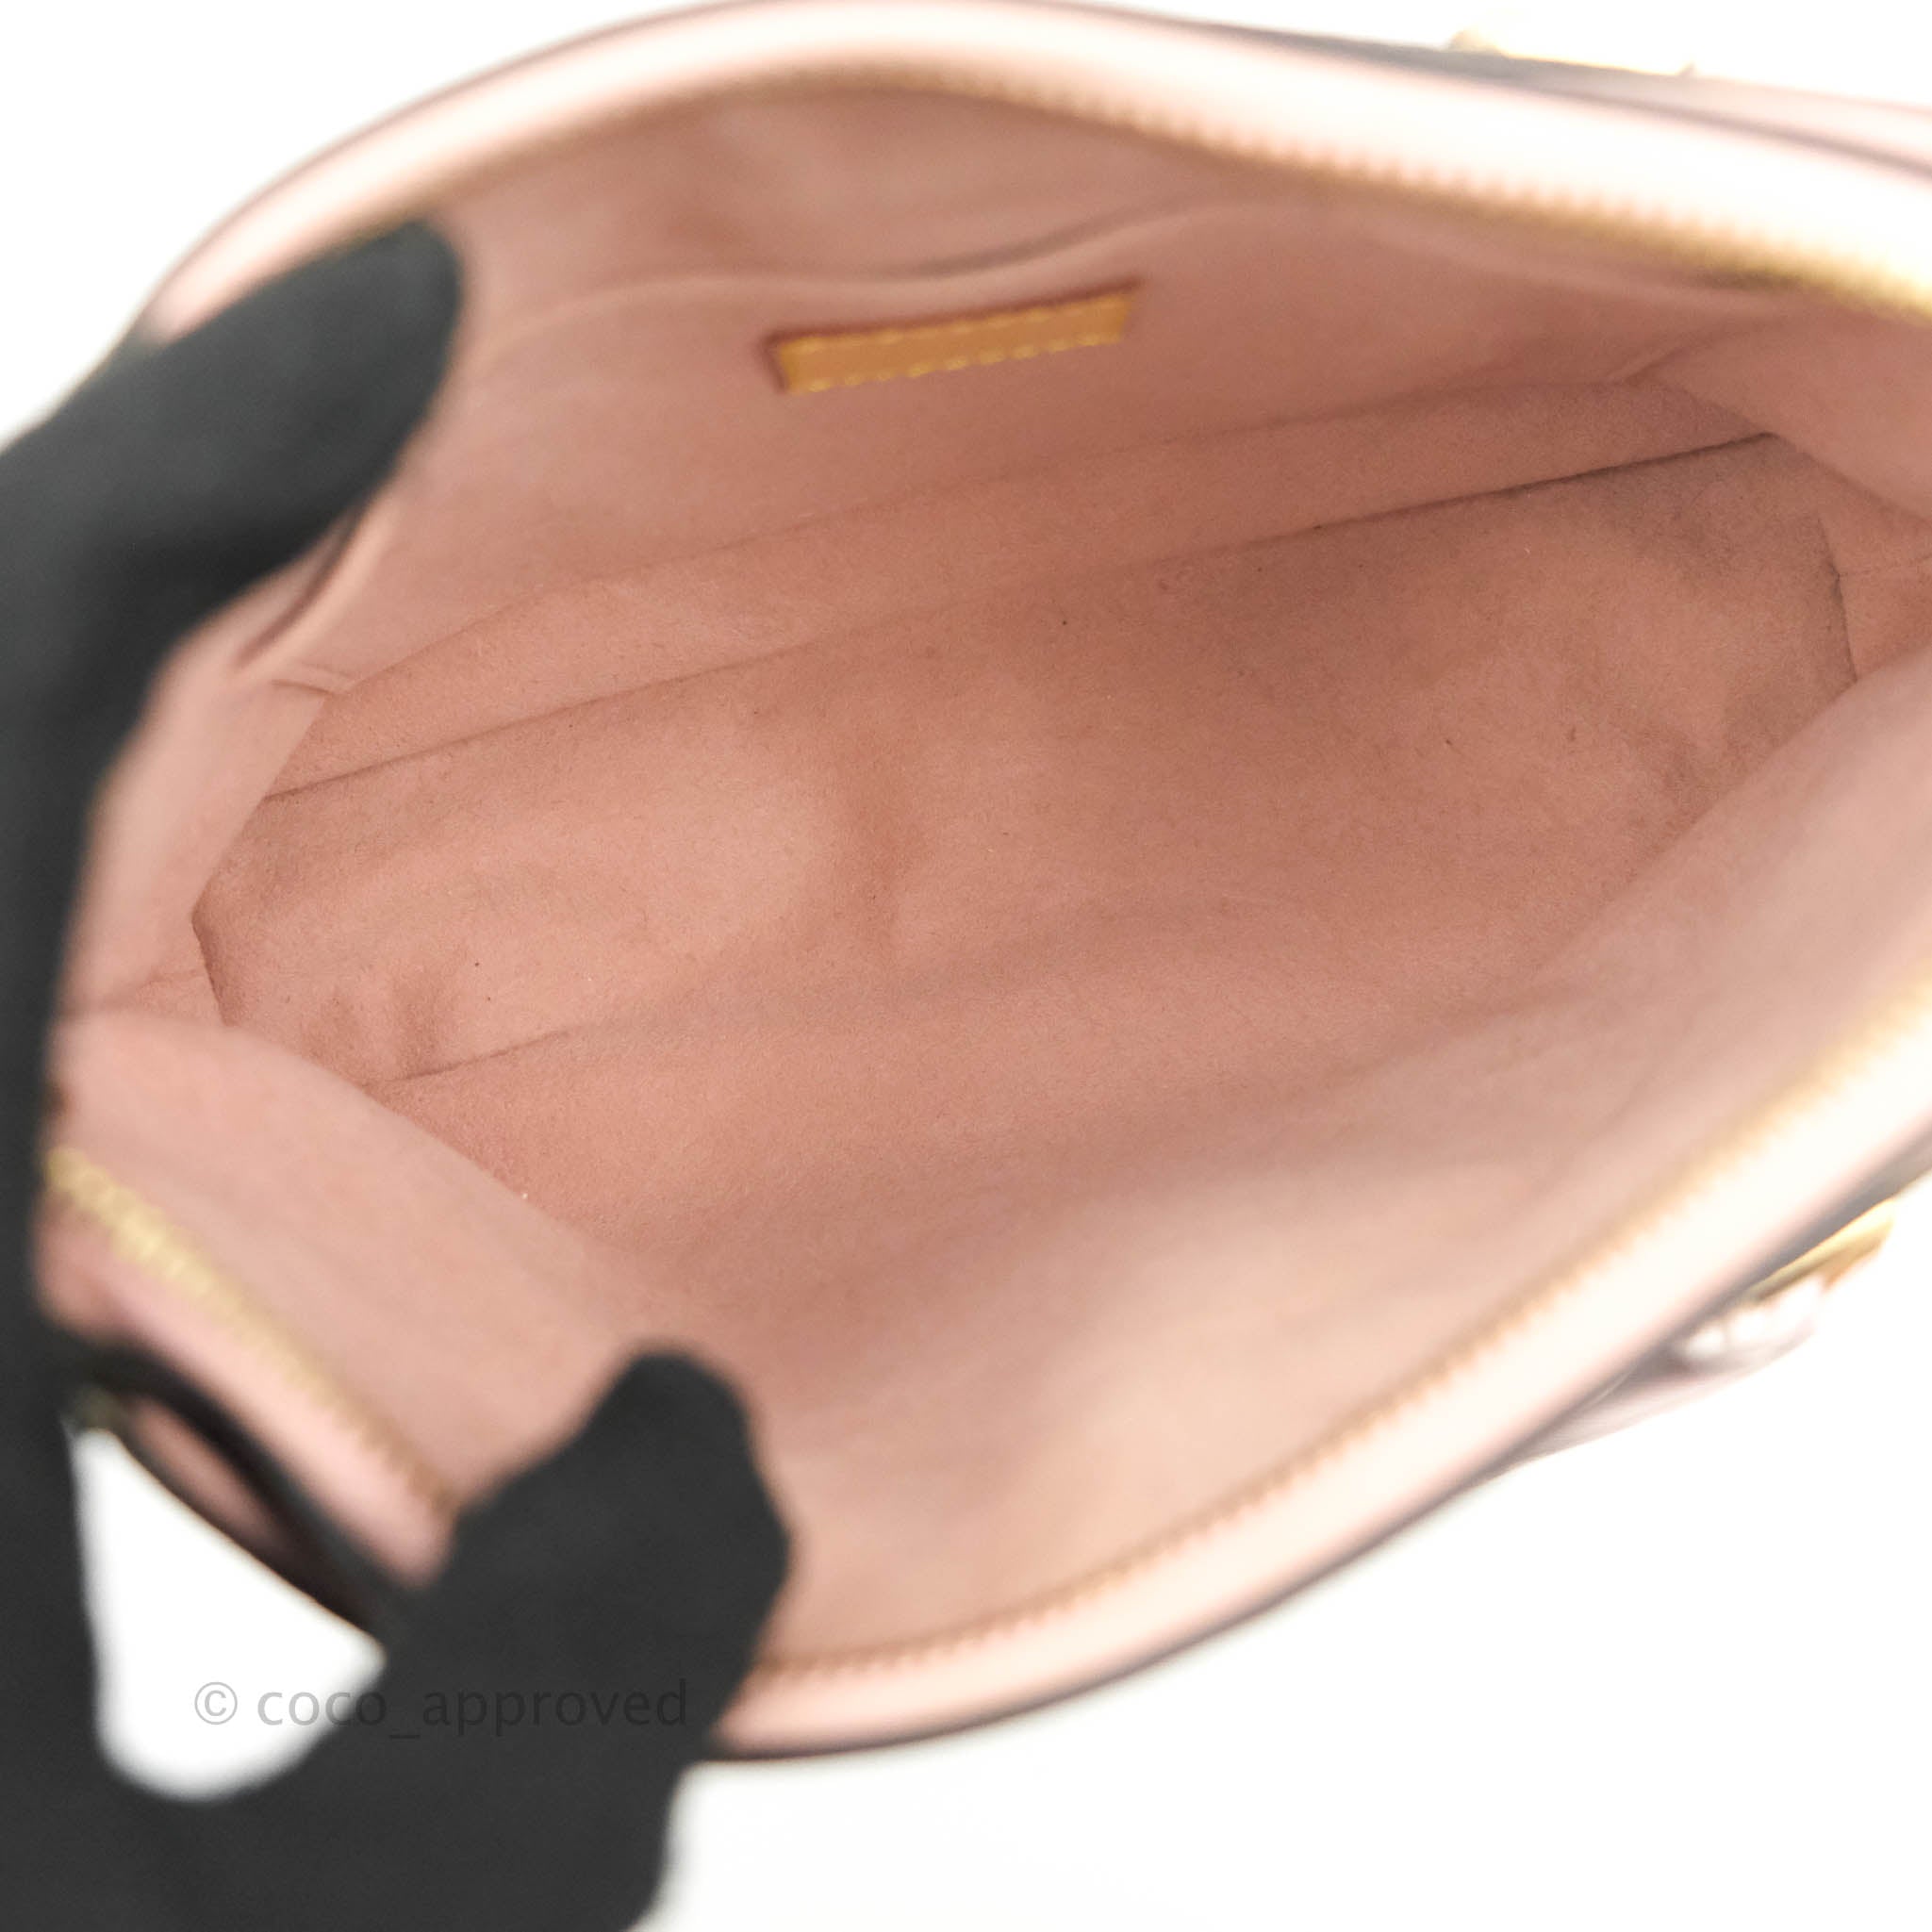 Louis Vuitton Pallas Shoulder bag 382953